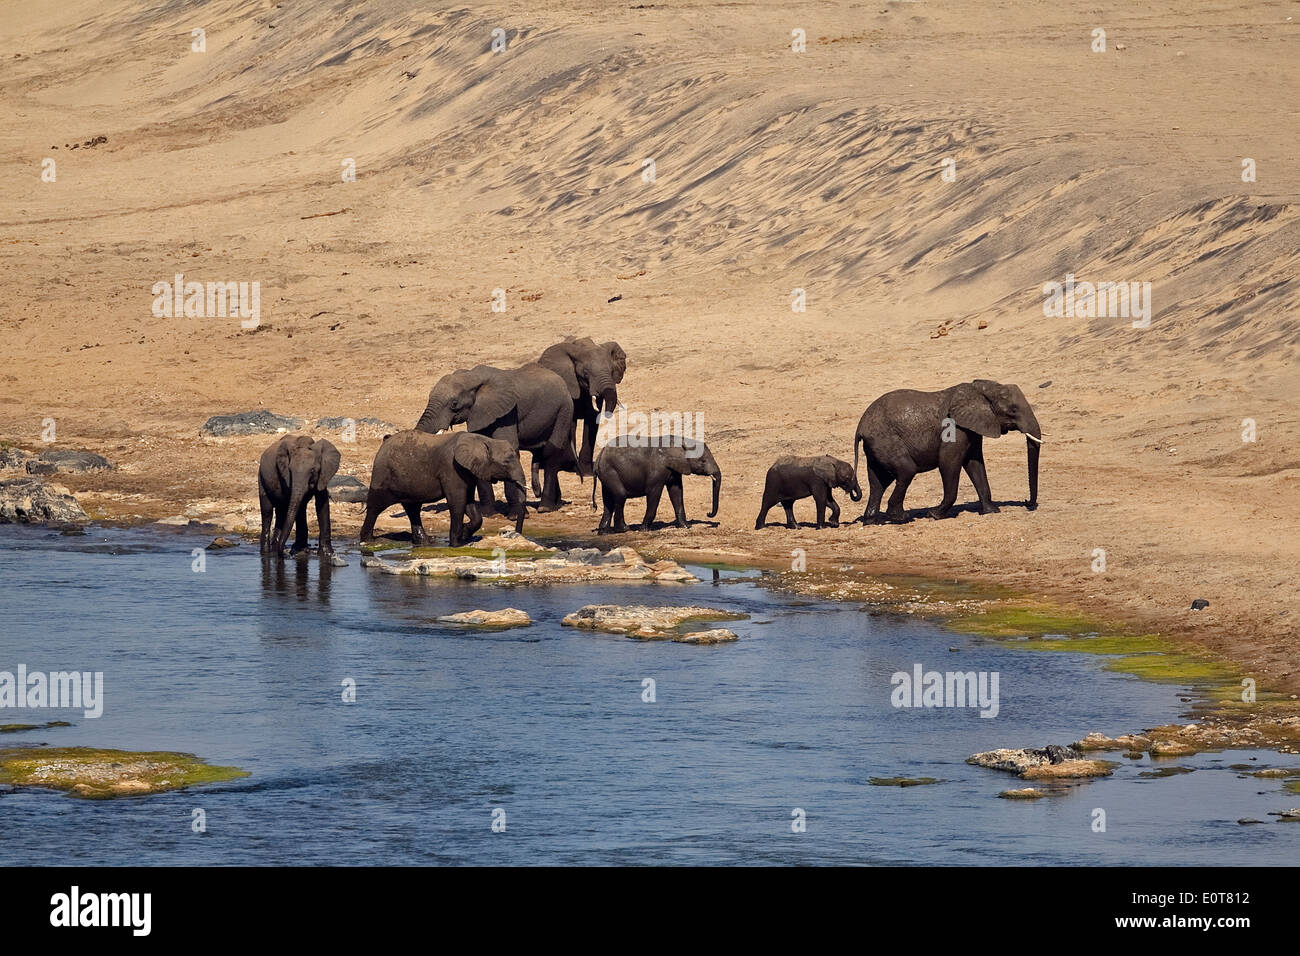 Les éléphants d'Afrique (Loxodonta africana) à partir de n'wamanzi lookout Kruger National Park, Afrique du Sud Banque D'Images